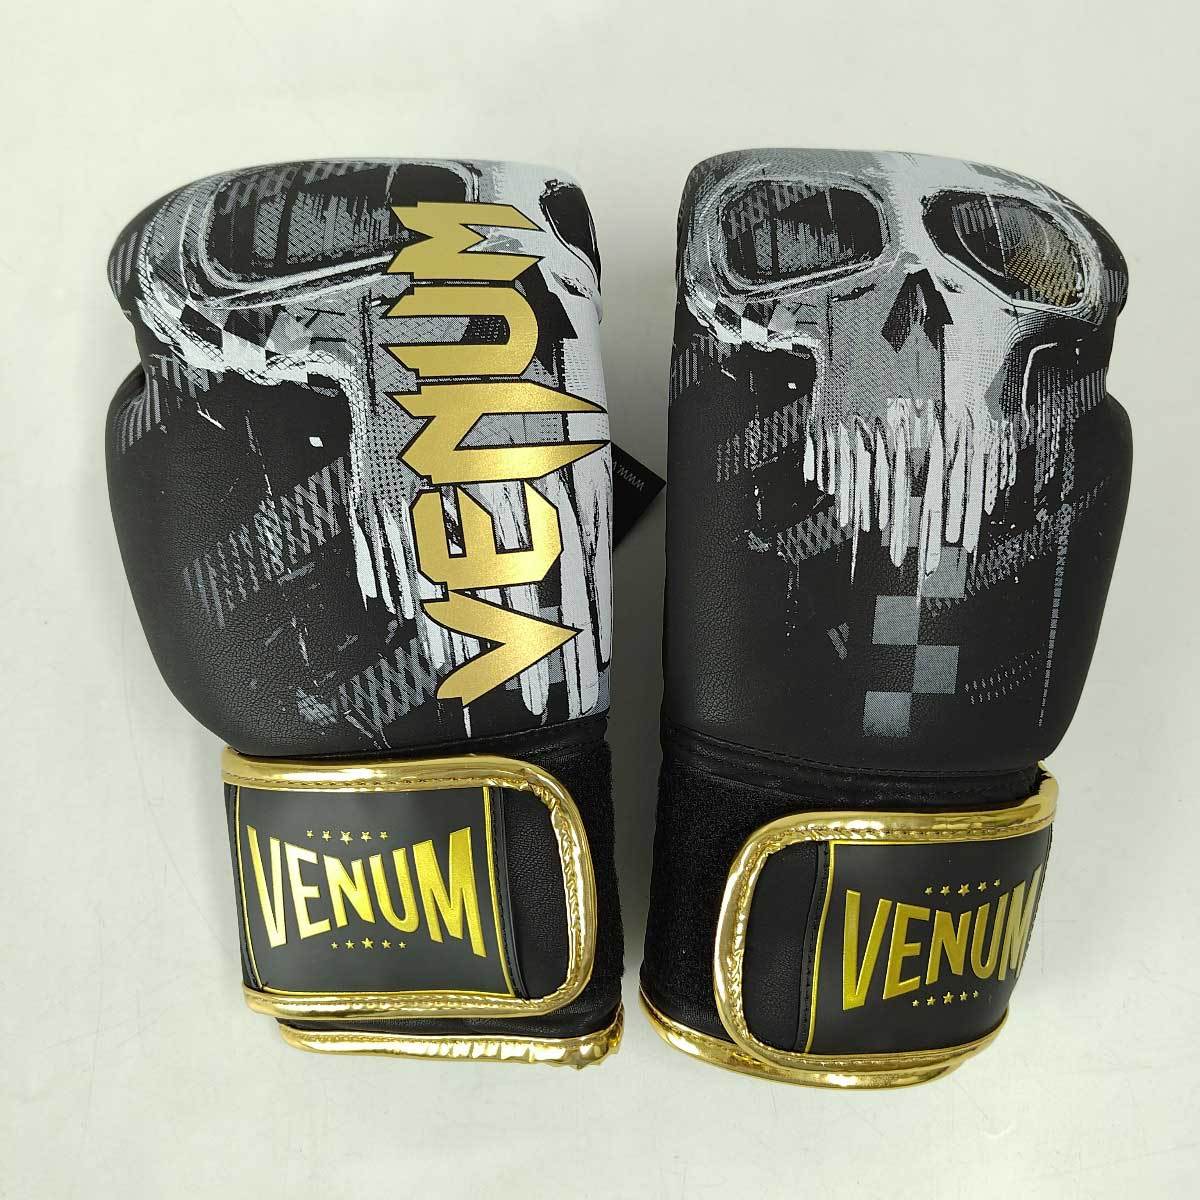 【中古・未使用品】ヴェナム ボクシンググローブ スカル Skull Boxing gloves 10oz ブラック VENUM-04035-001 VENUM